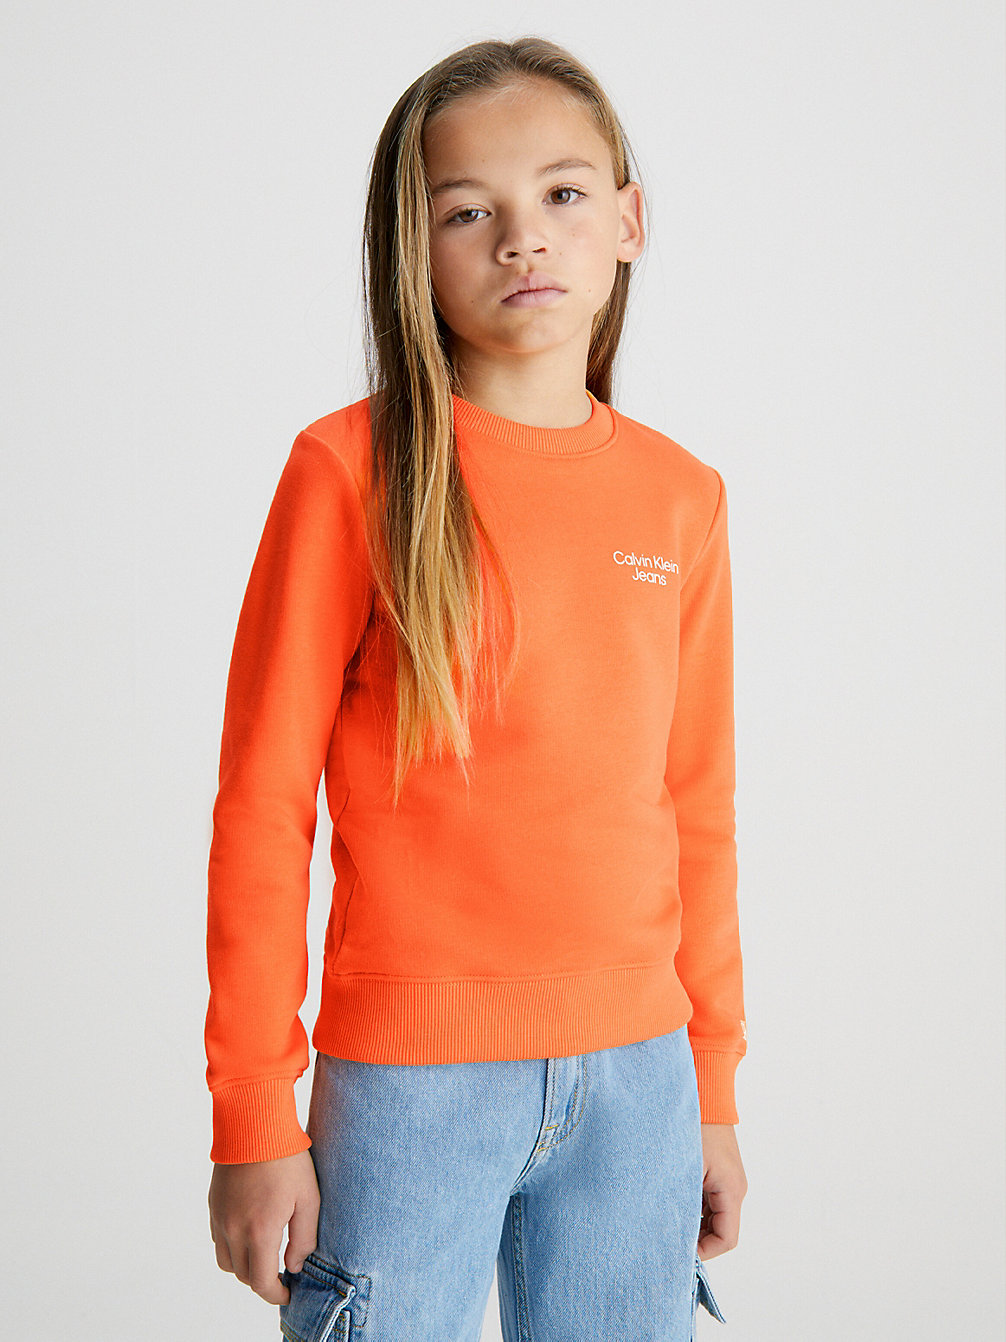 VIBRANT ORANGE > Bluza Z Bawełny Organicznej Z Logo > undefined boys - Calvin Klein